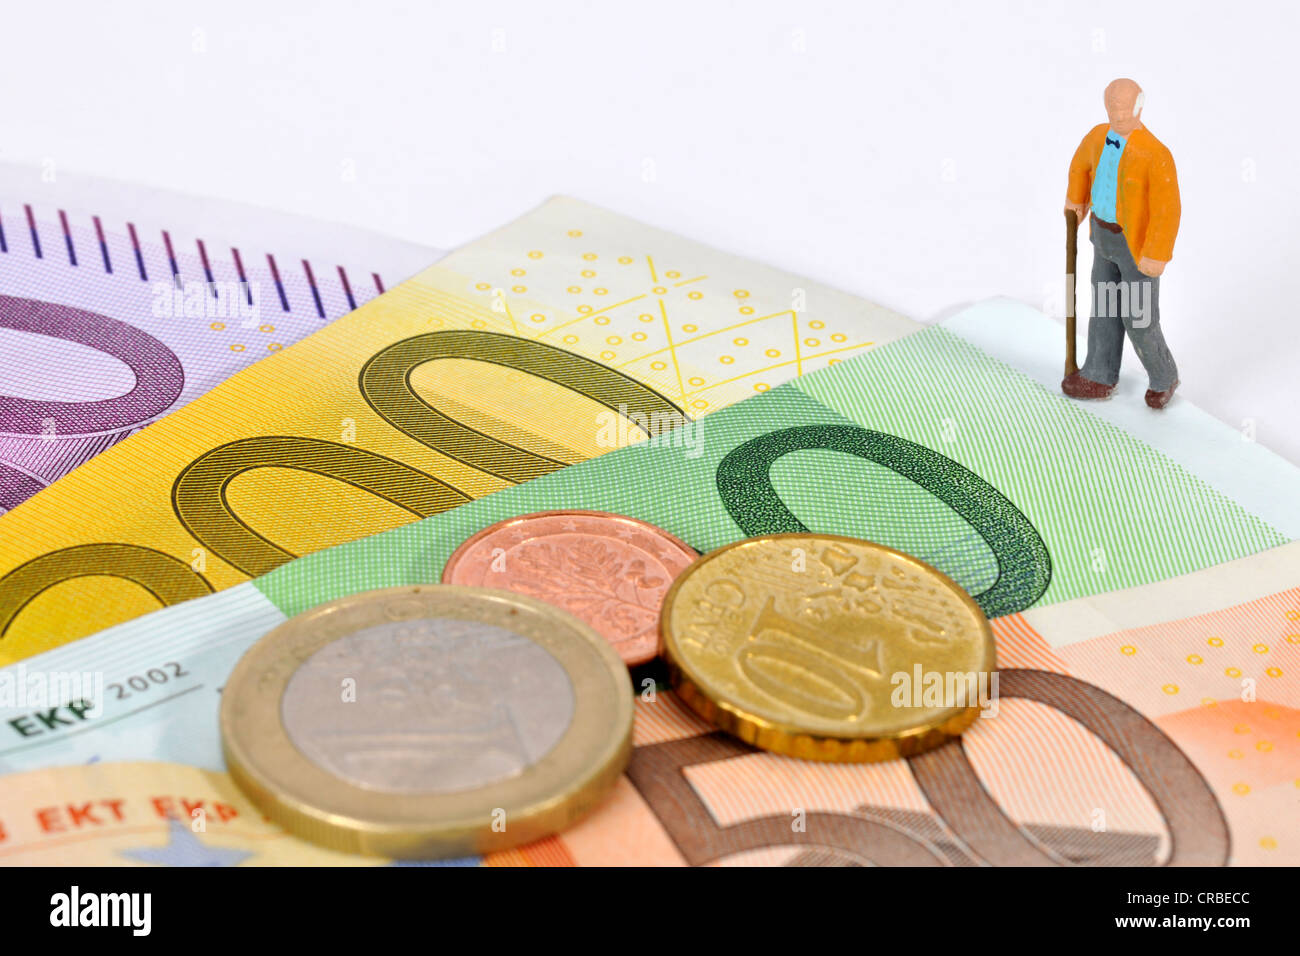 Miniatur-Figur von einem pensionierten Mann zu Fuß auf Euro-Banknoten und Münzen, symbolisches Bild für den Ruhestand, pension Stockfoto